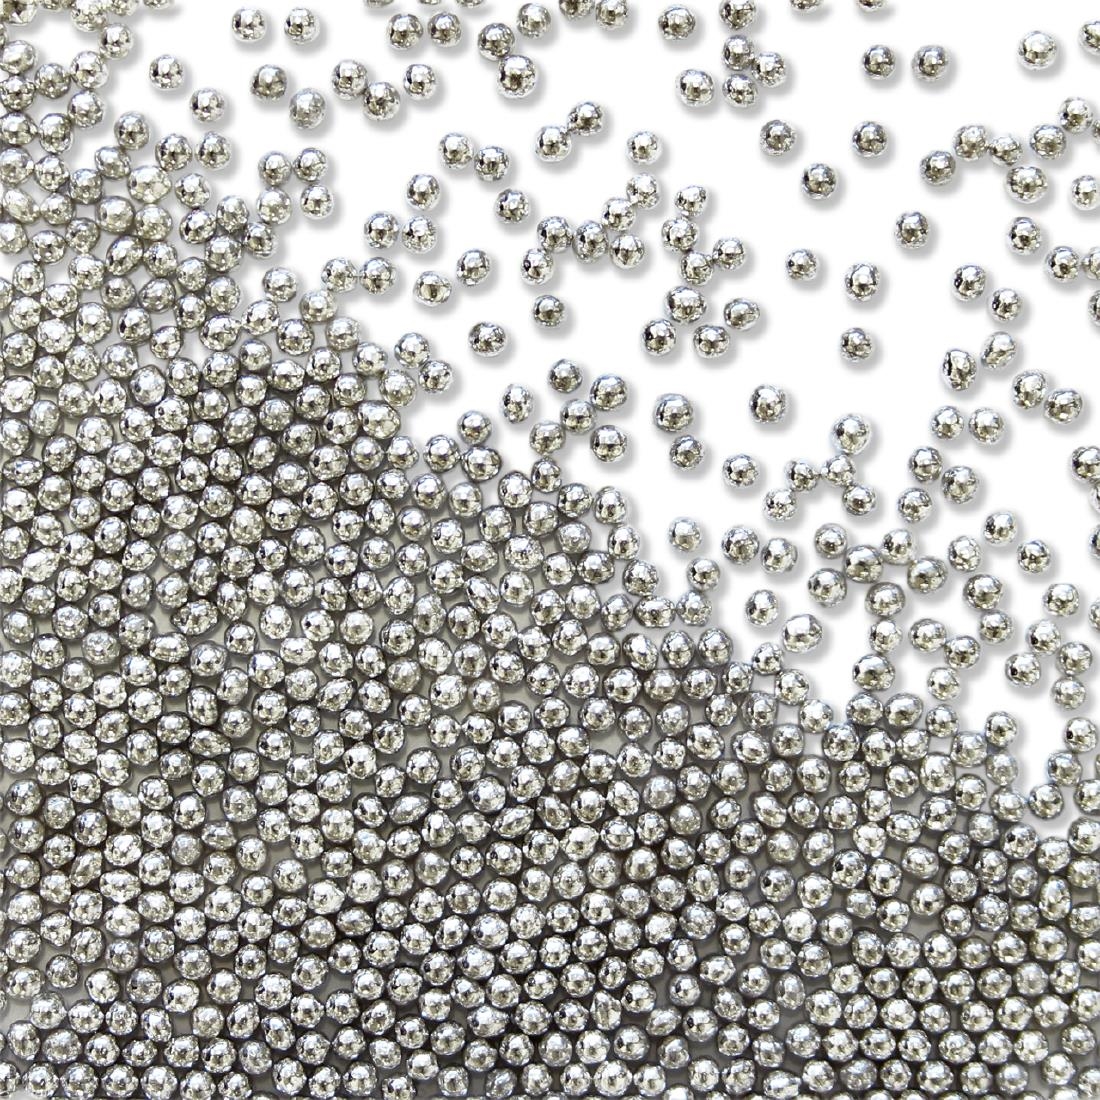 PME Silver Sugar Pearls 25g - Nonpareils (HU229)